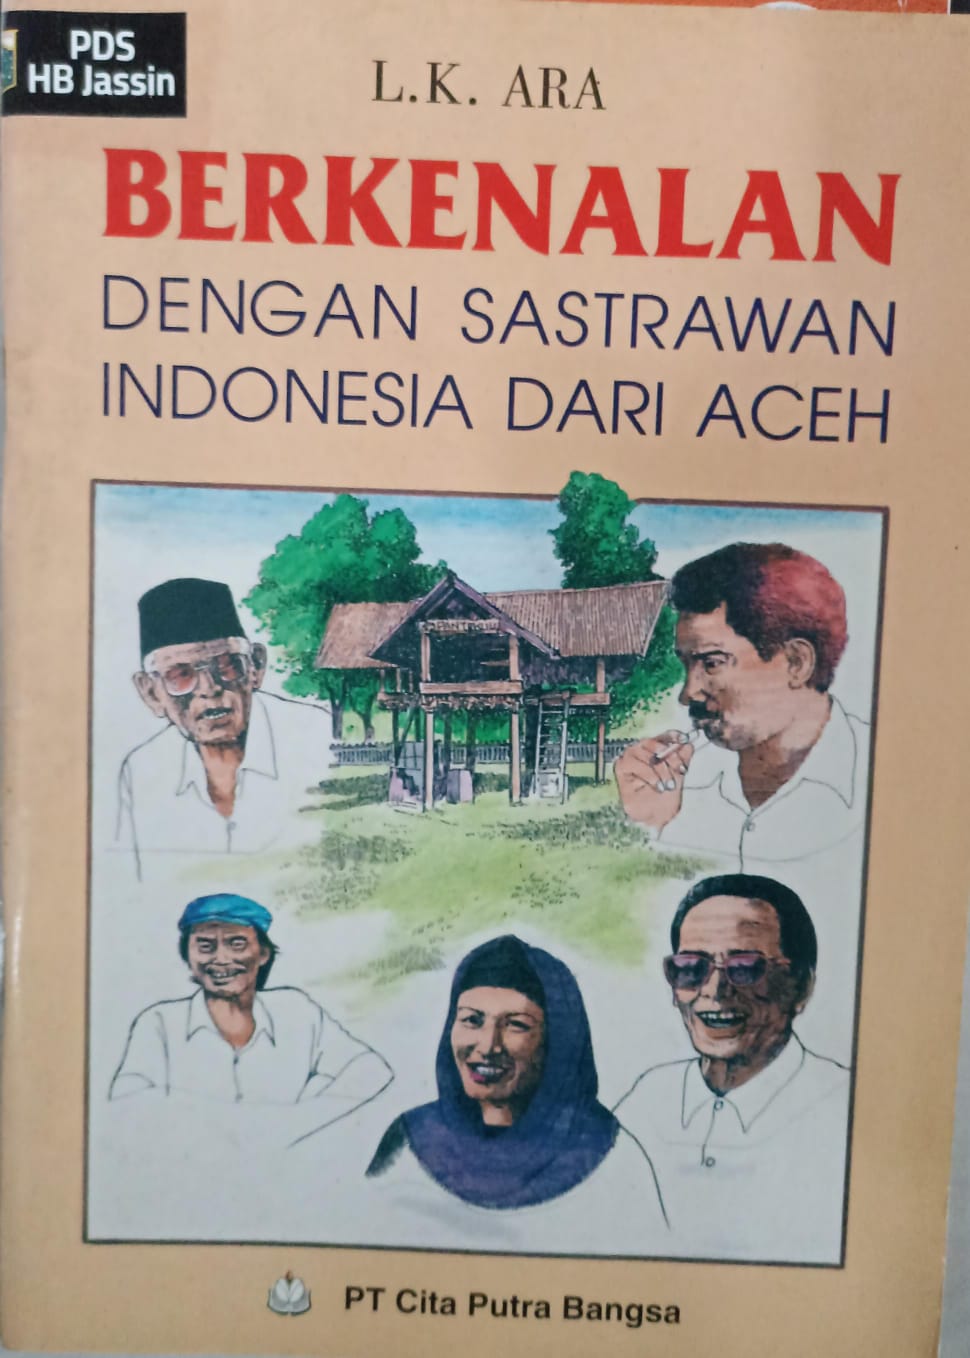 Berkenalan dengan sastrawan indonesia dari aceh